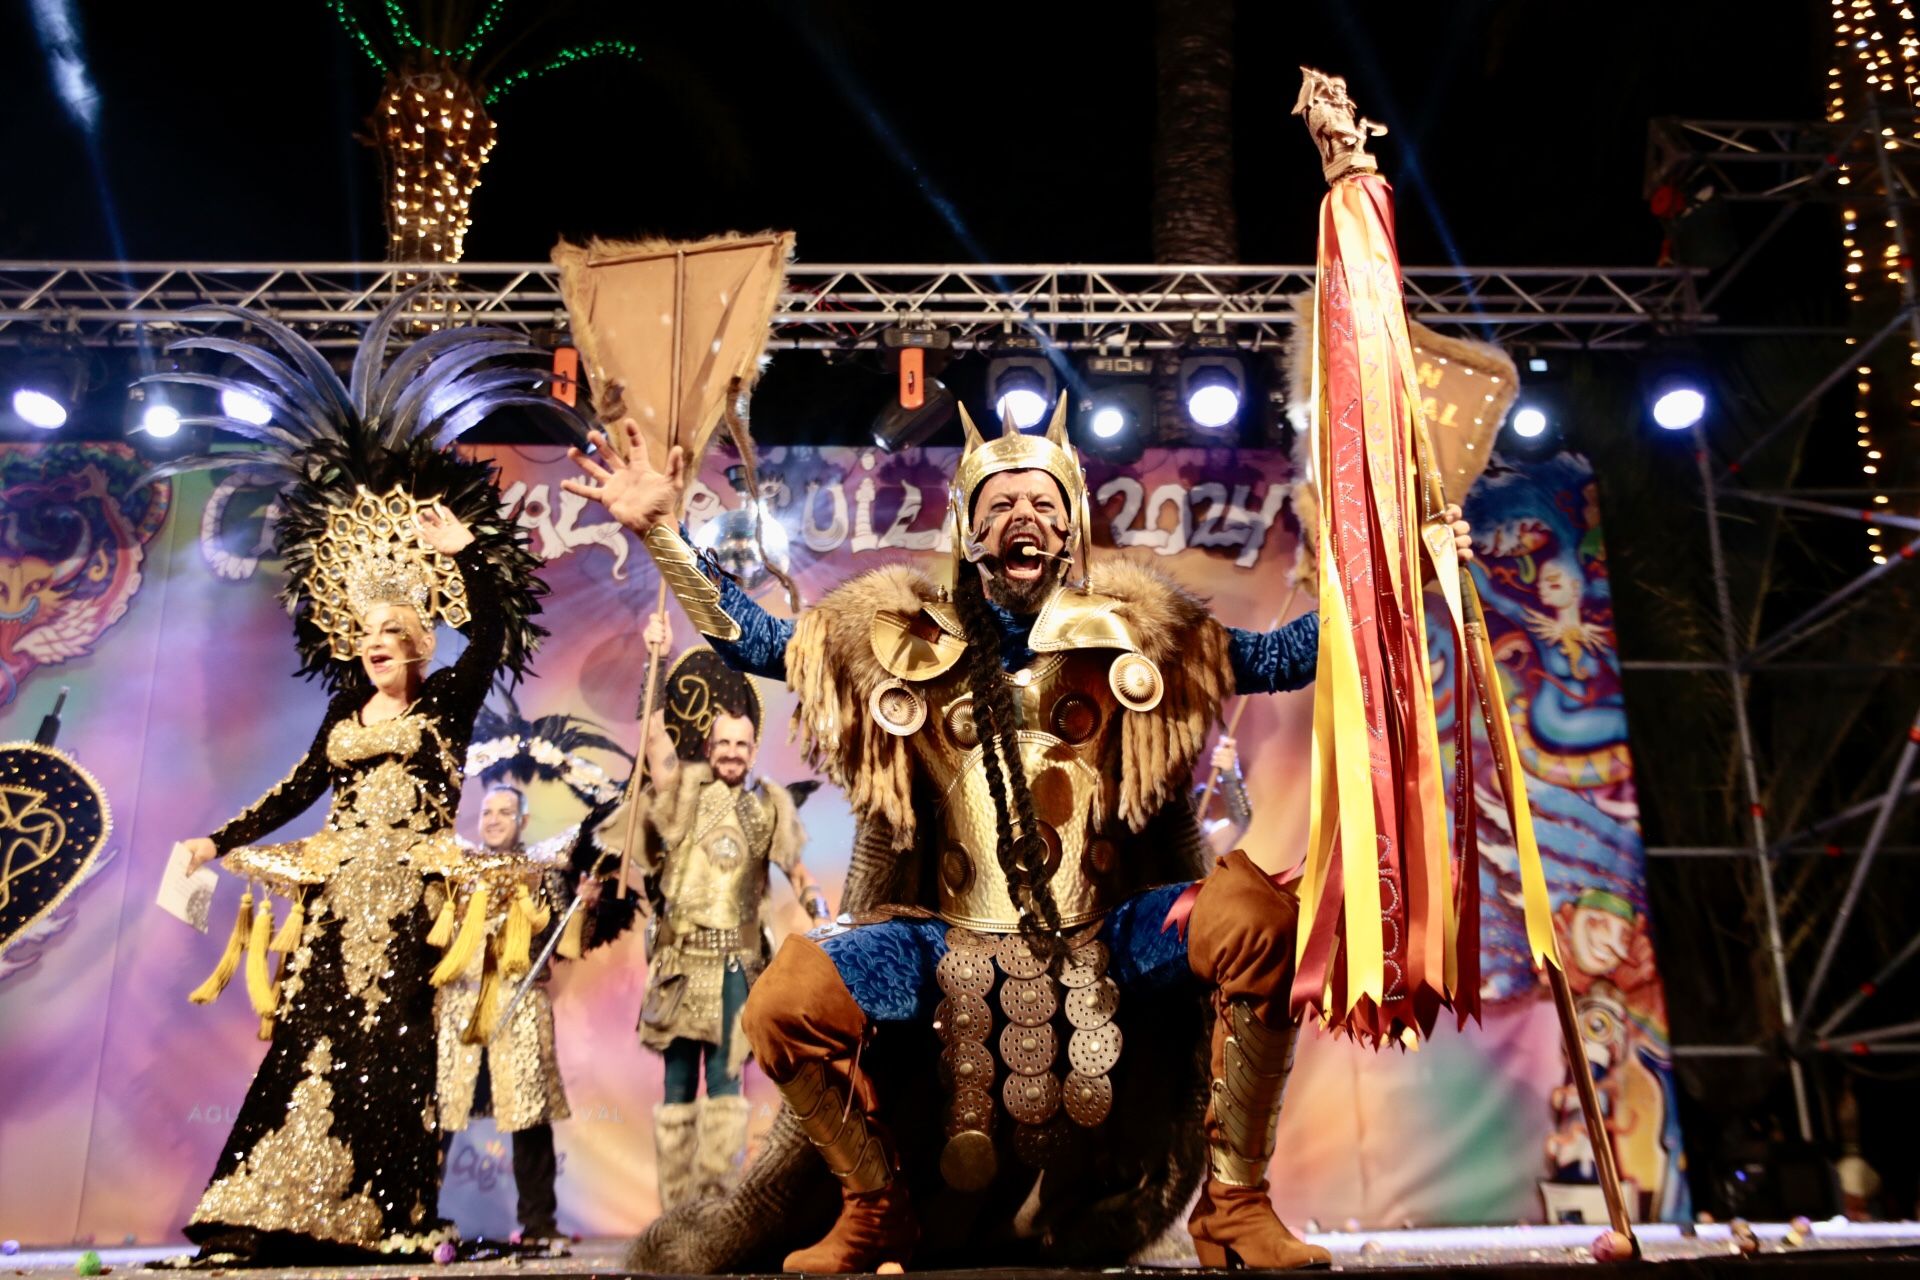 Batalla de Don Carnal y Doña Cuaresma, y pregón del Carnaval de Águilas en fotos